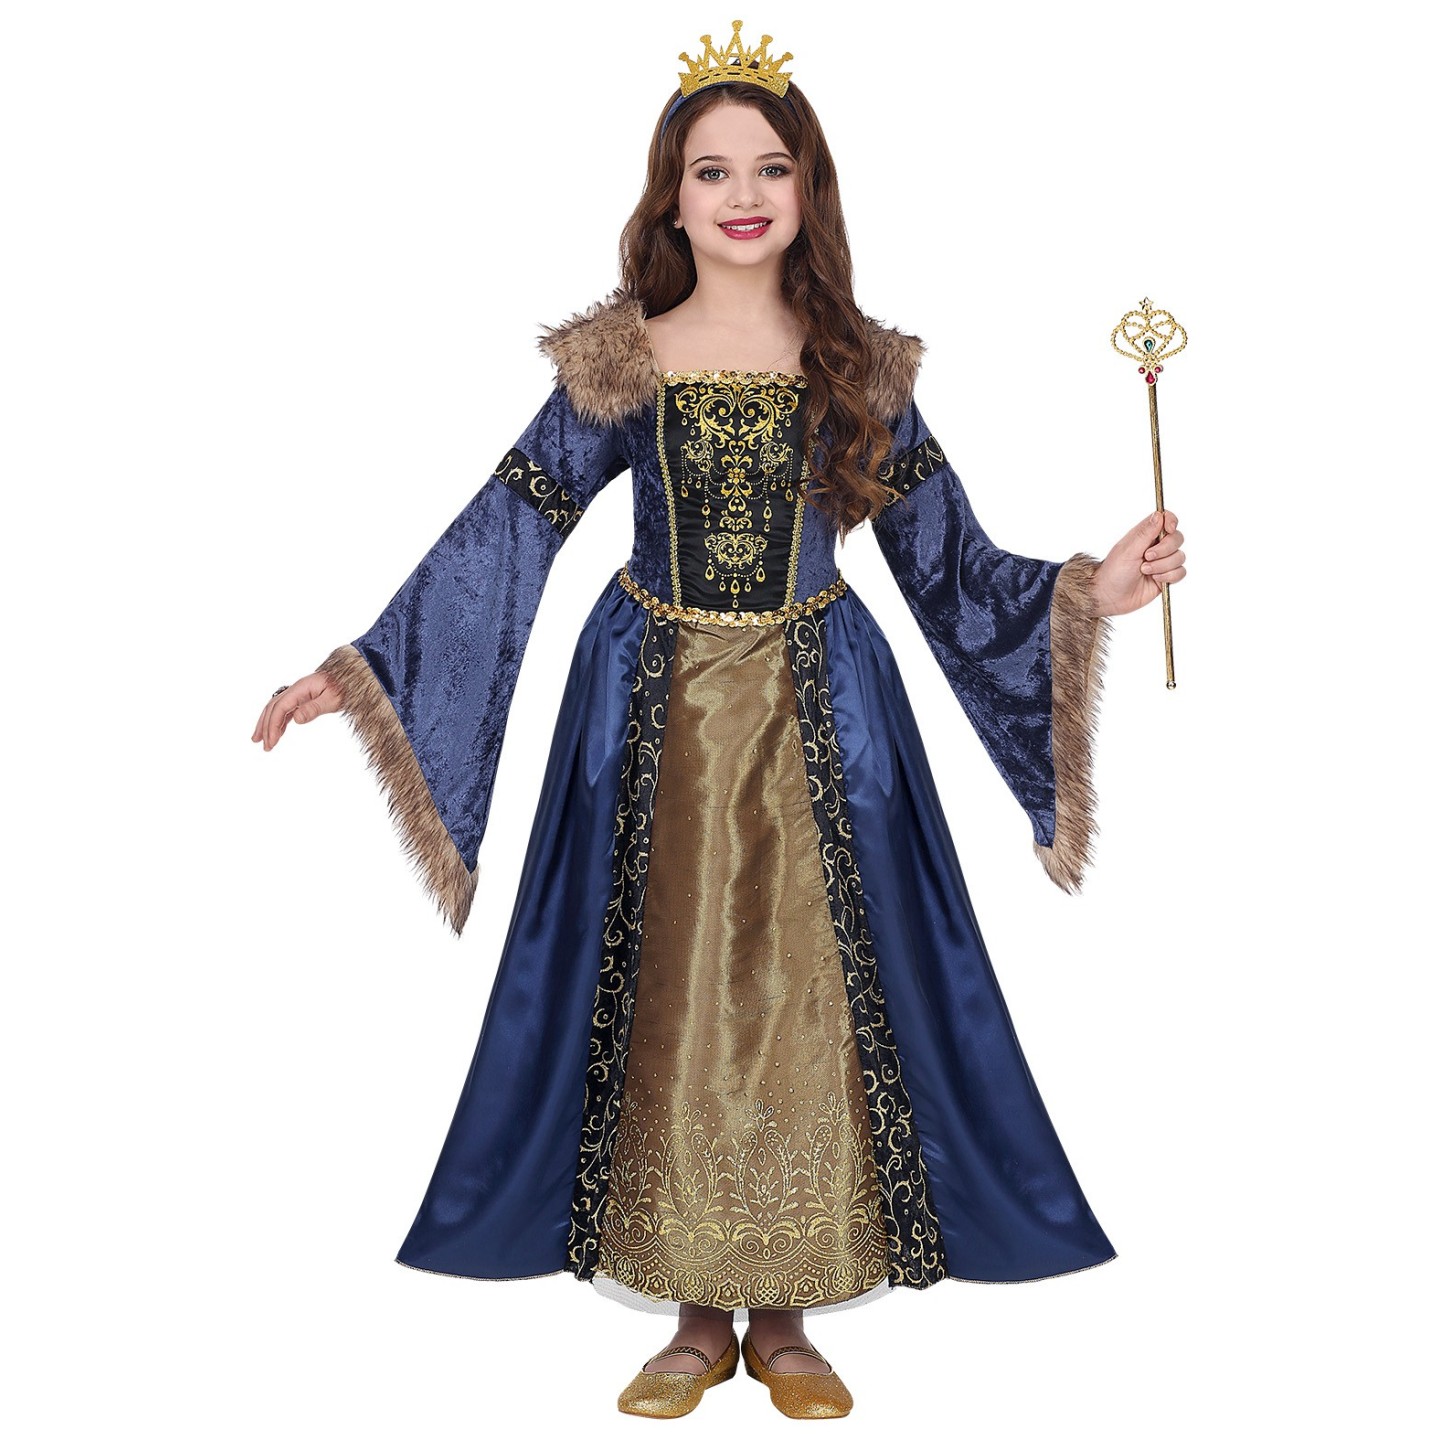 Middeleeuwse koningin kostuum kind kleding carnaval